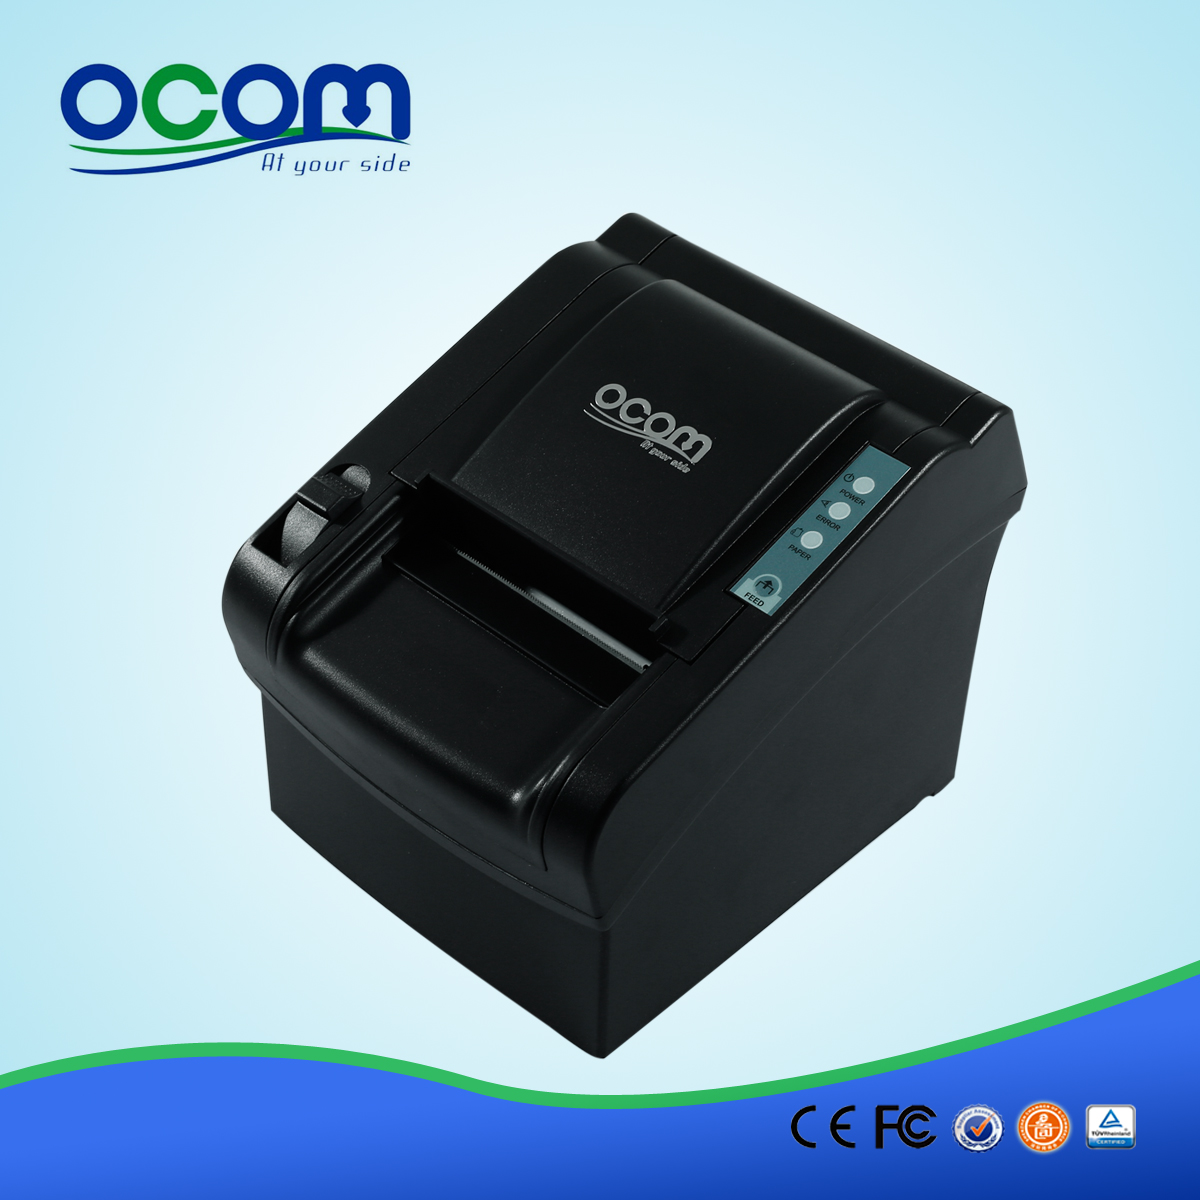 OCPP-802: на продажу пос чекового принтера, 80мм тепловой чековый принтер